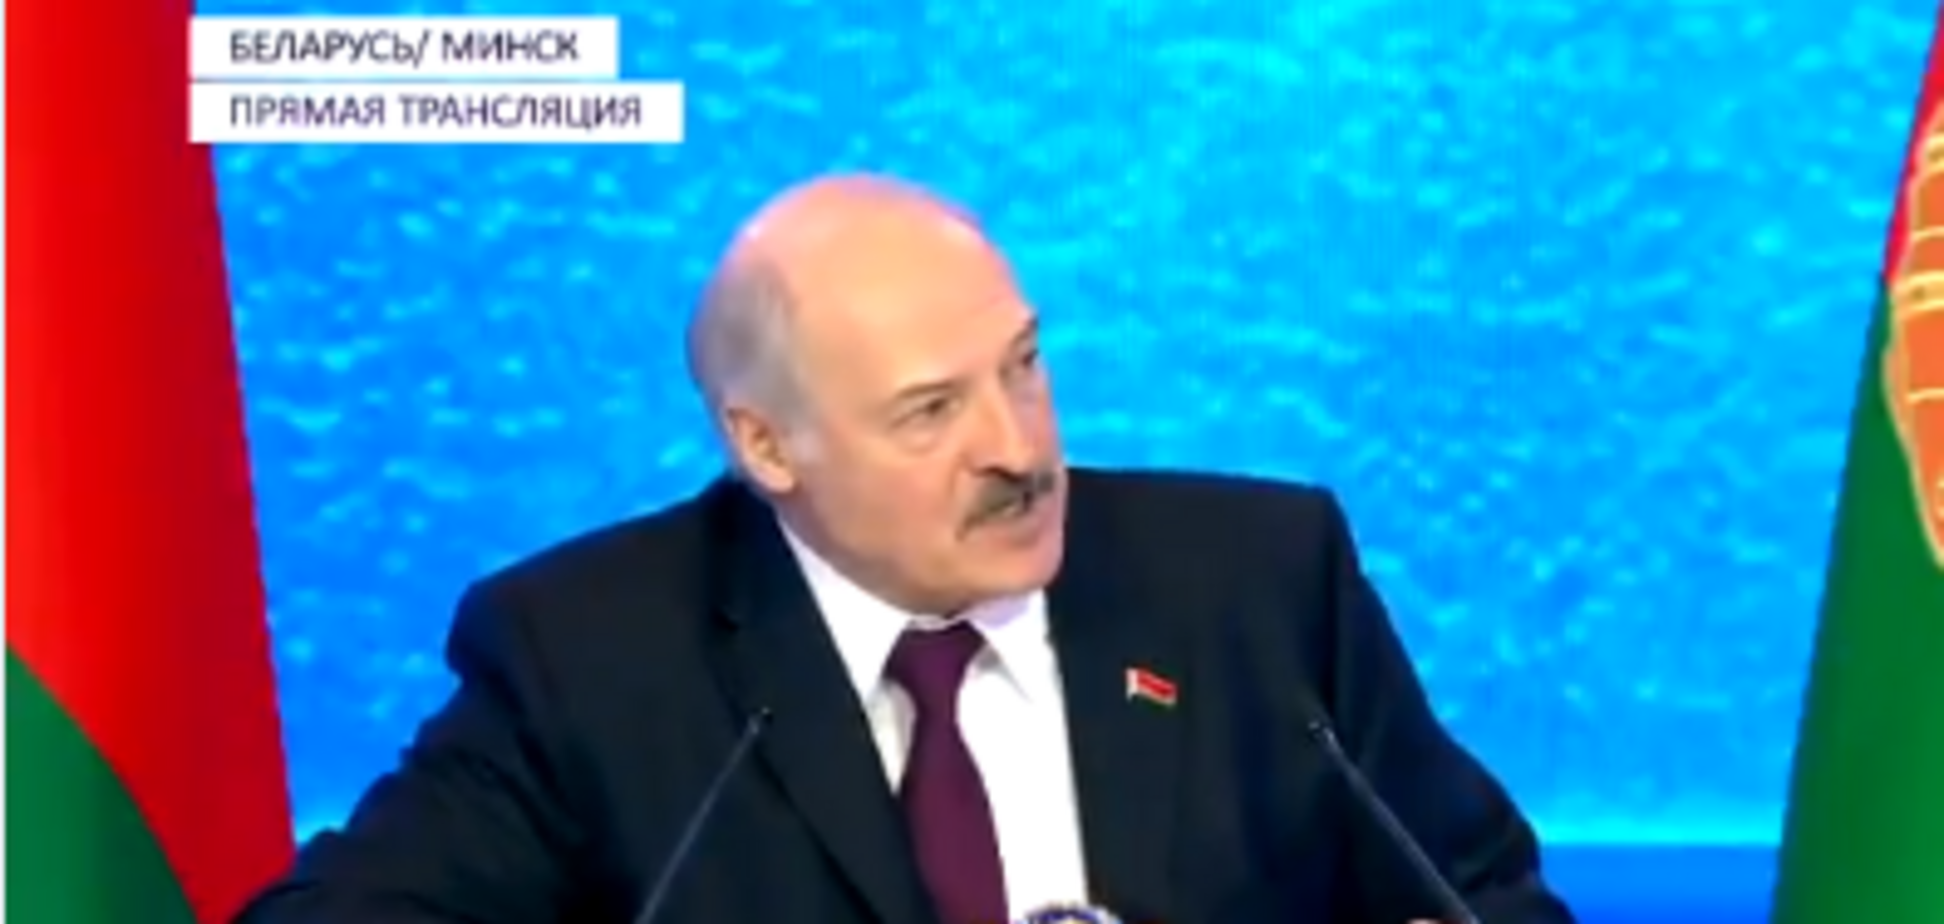 Лукашенко предсказал имя нового президента Украины